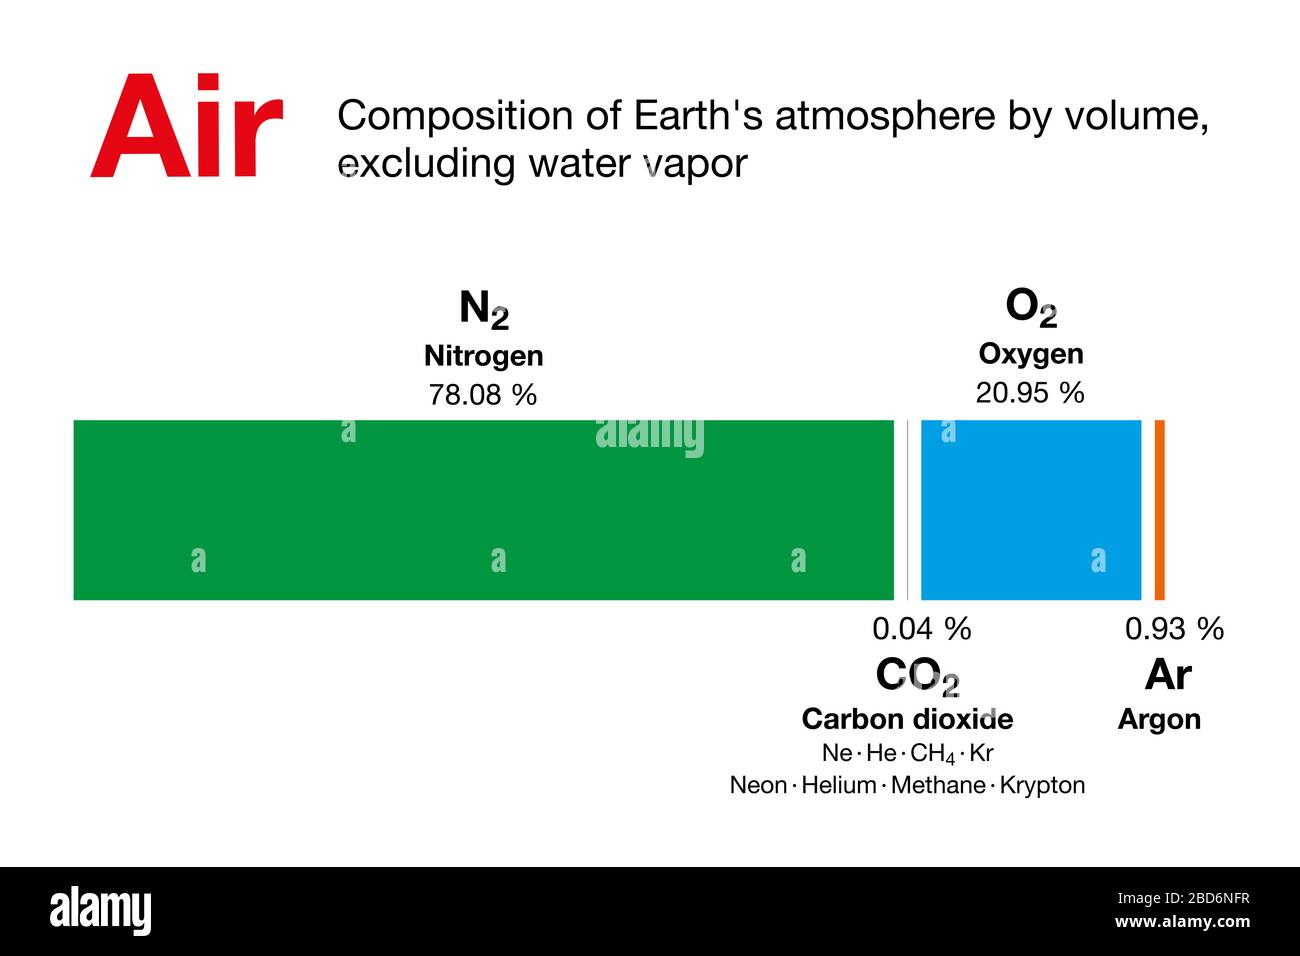 Luft. Zusammensetzung der Erdatmosphäre nach Volumen, ohne Wasserdampf.  Trockene Luft enthält Stickstoff, Sauerstoff, Argon, Kohlendioxid und  andere Gase Stockfotografie - Alamy